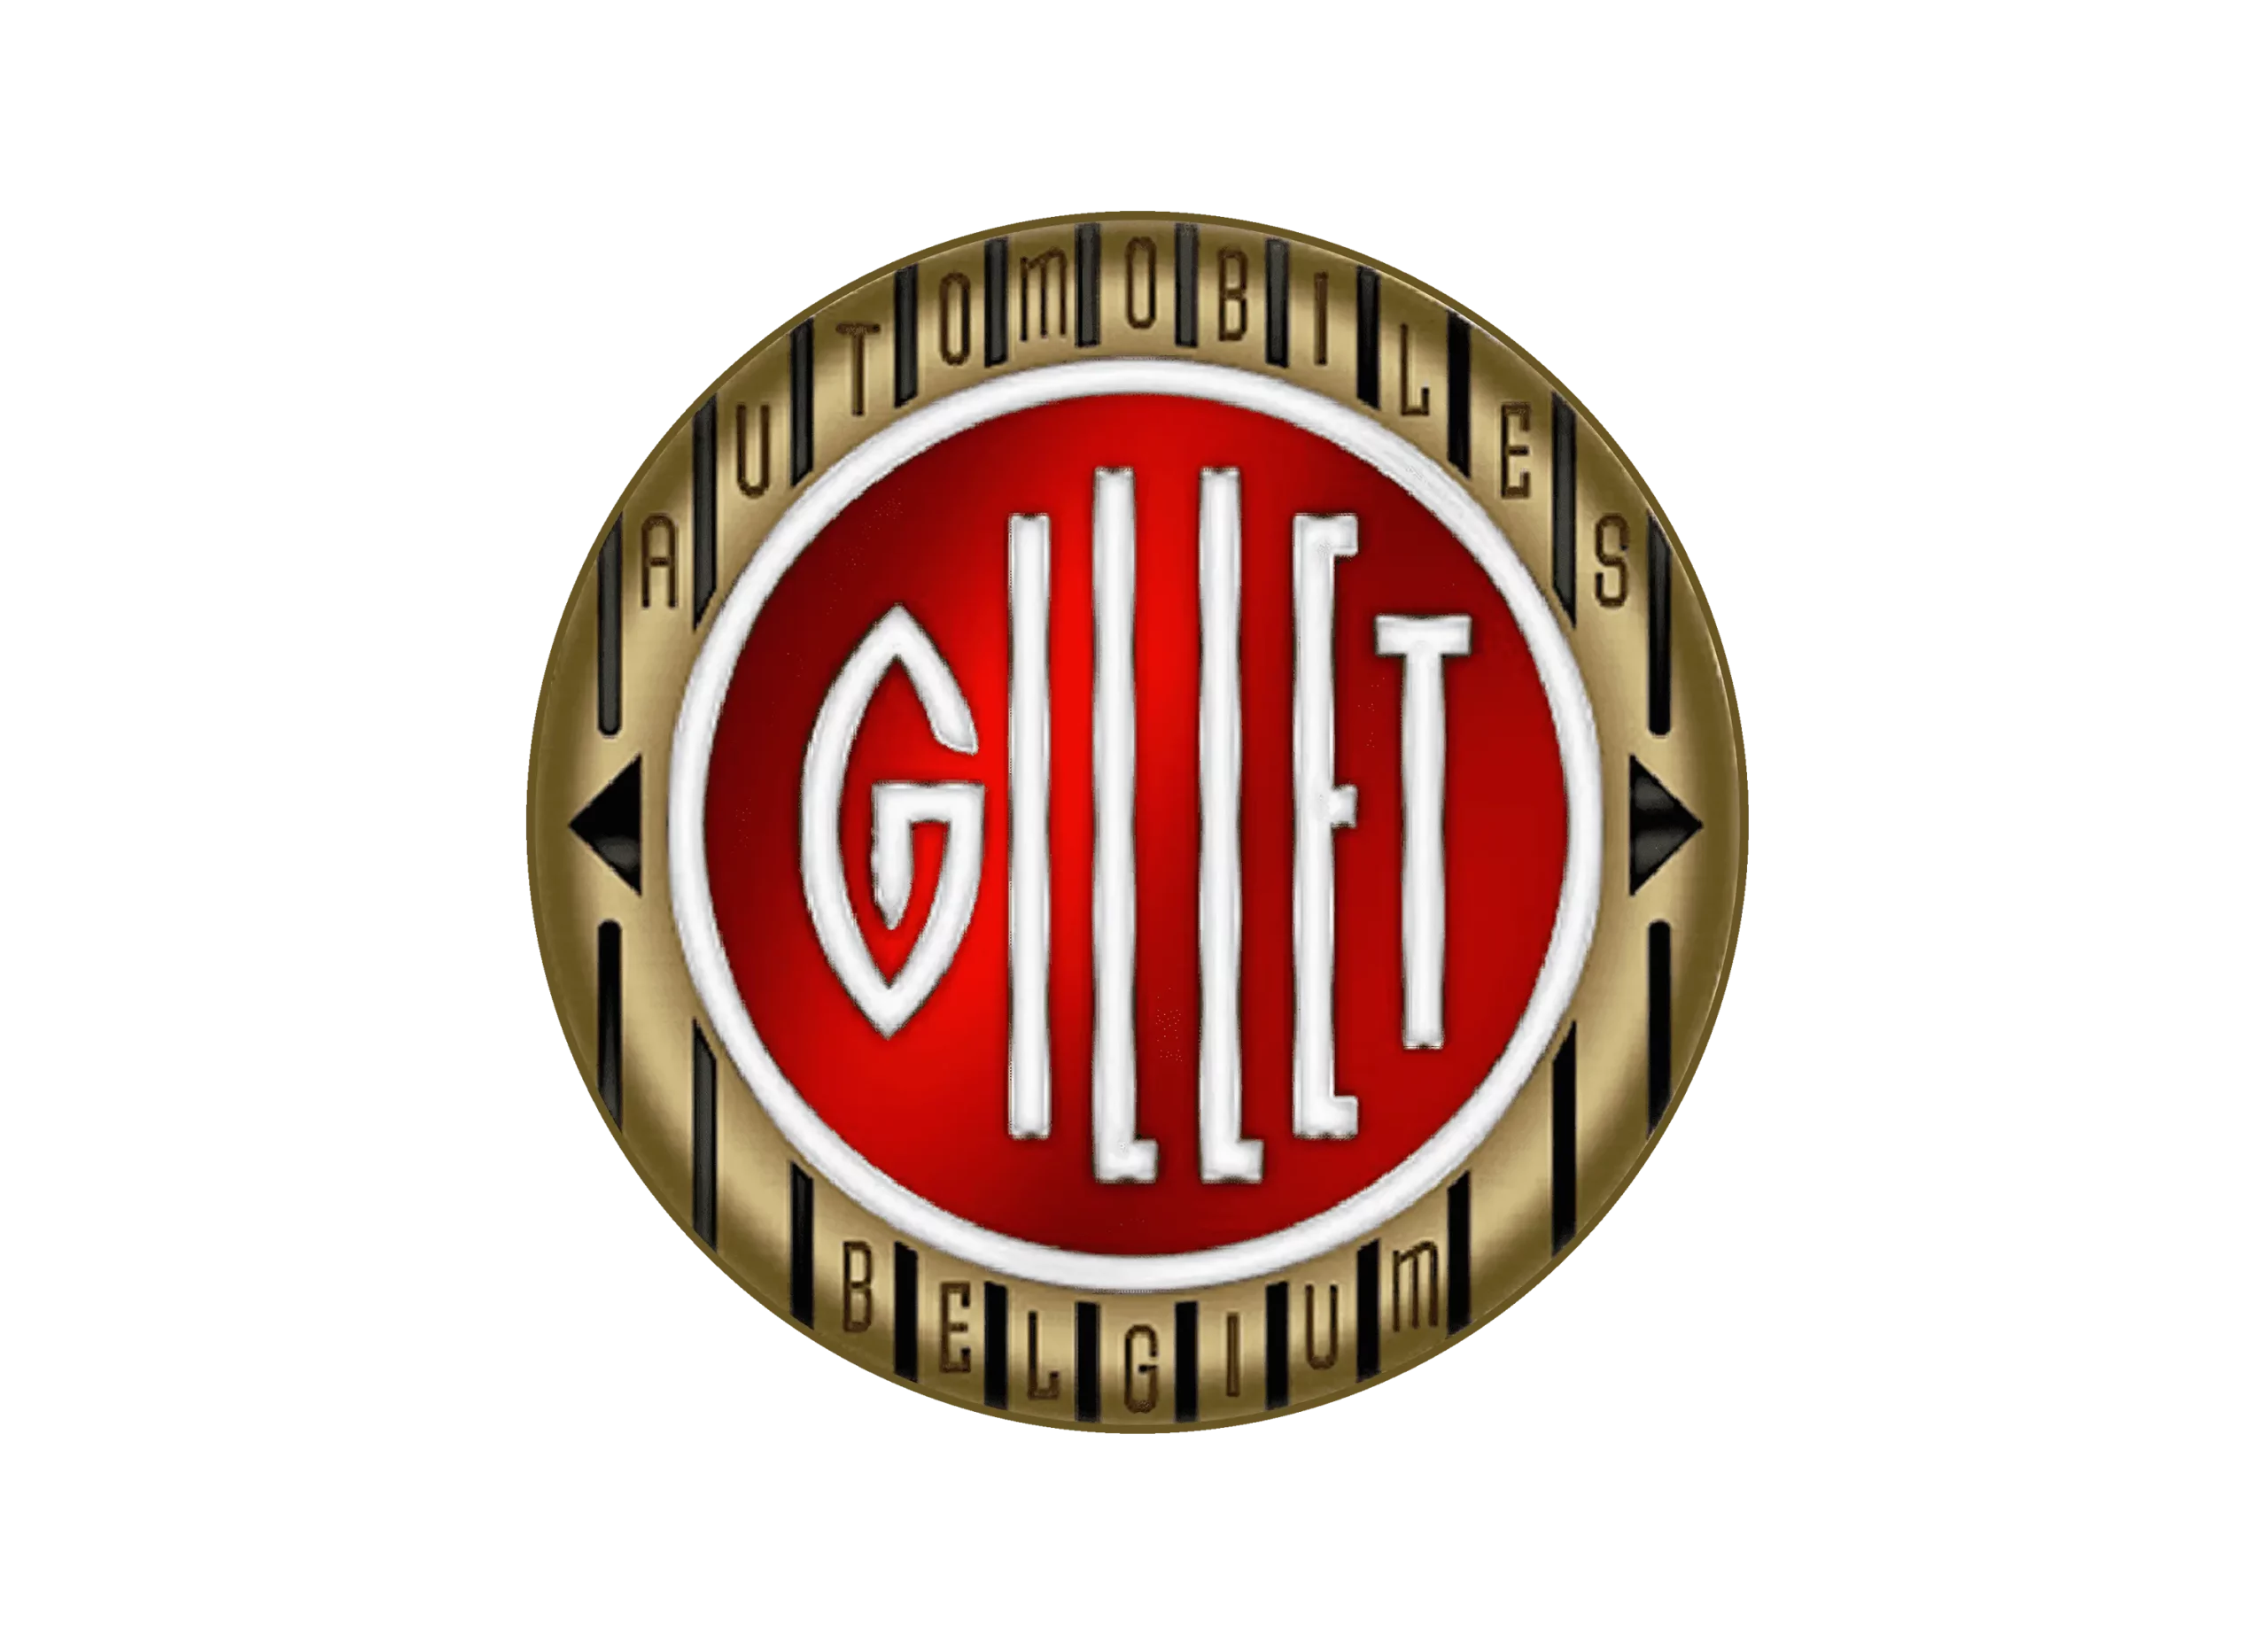 Gillet logo 1992-1994